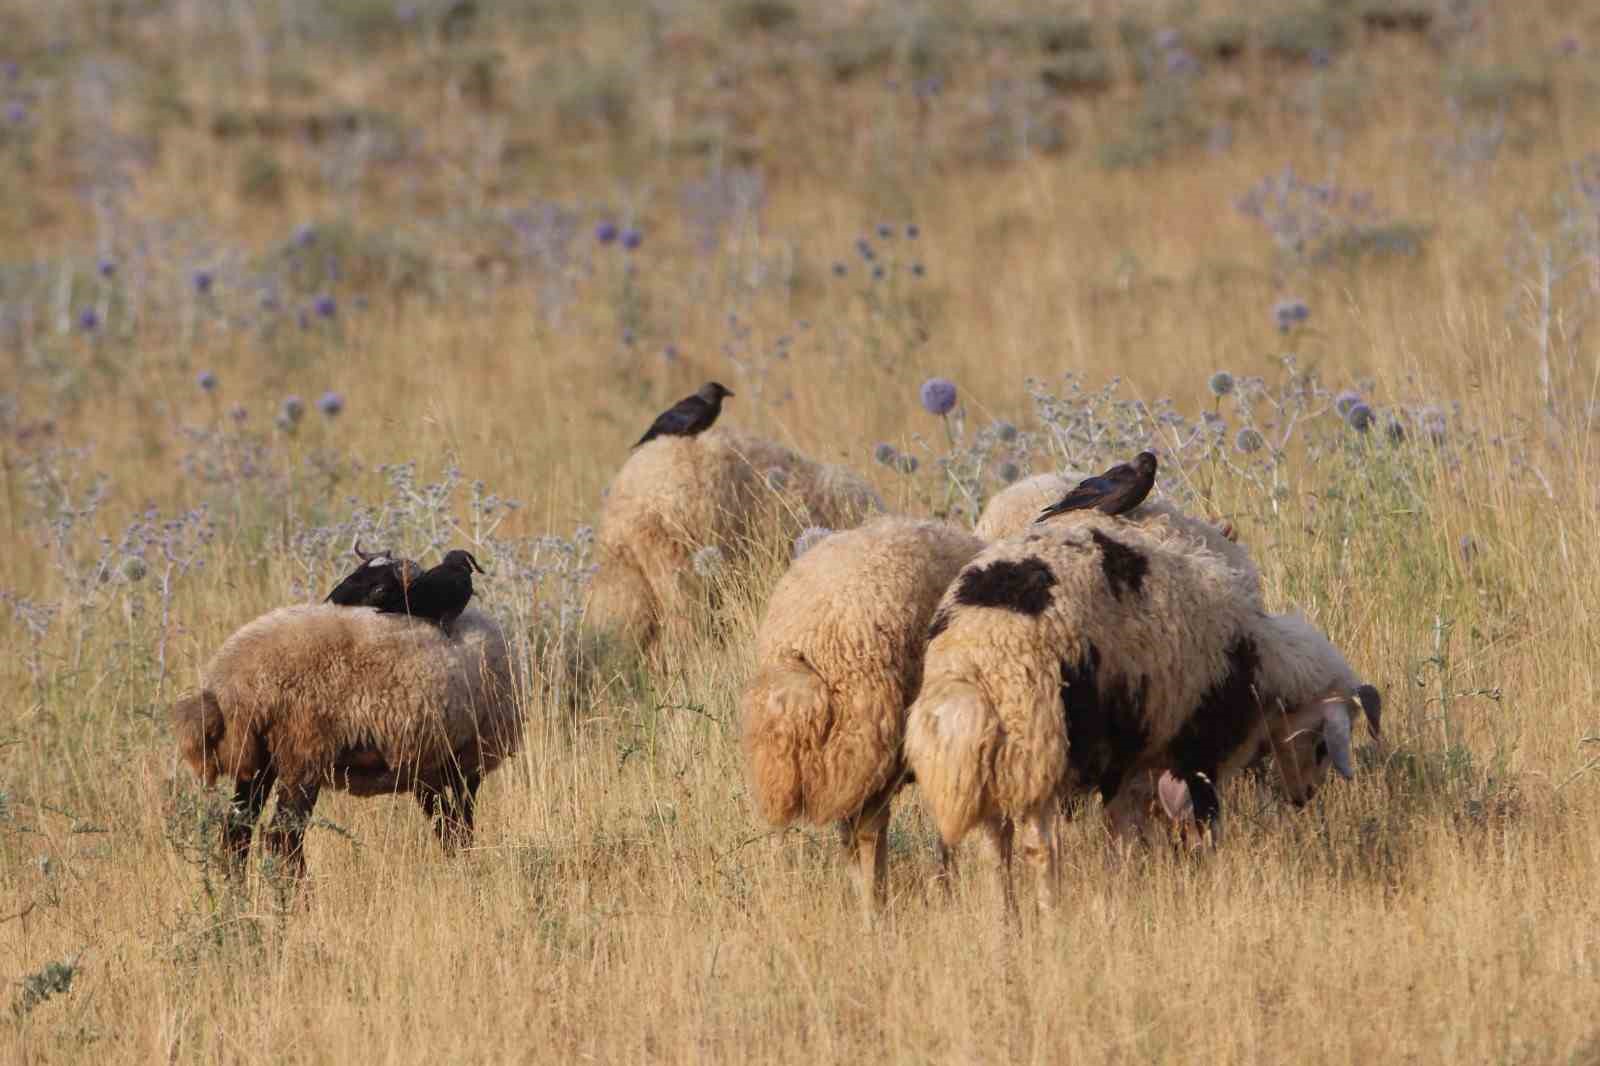 Koyunların üzerine konarak beslenen kuşlar ilginç görüntüler oluşturuyor